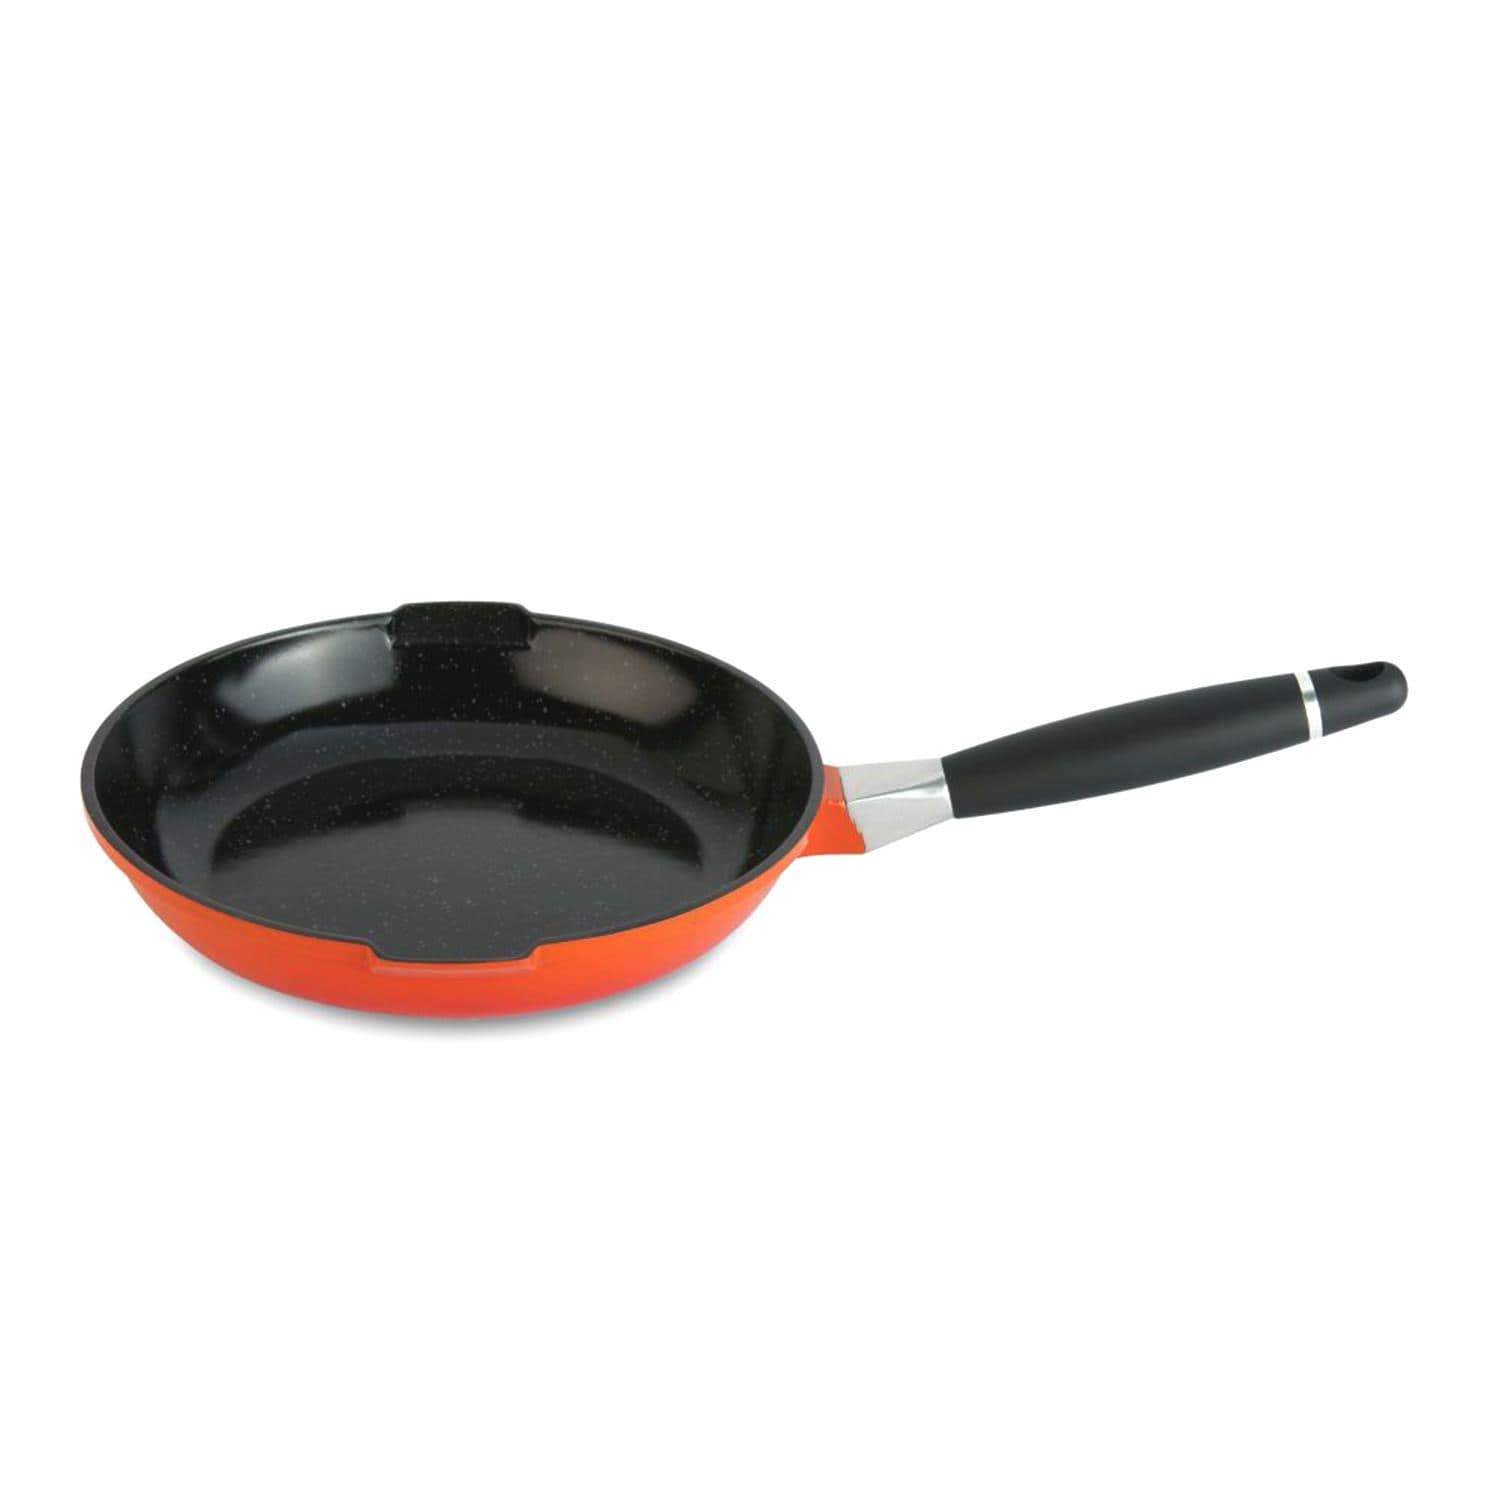 BergHOFF Virgo frying pans - Orange, 20 cm - 2304936 - Jashanmal Home